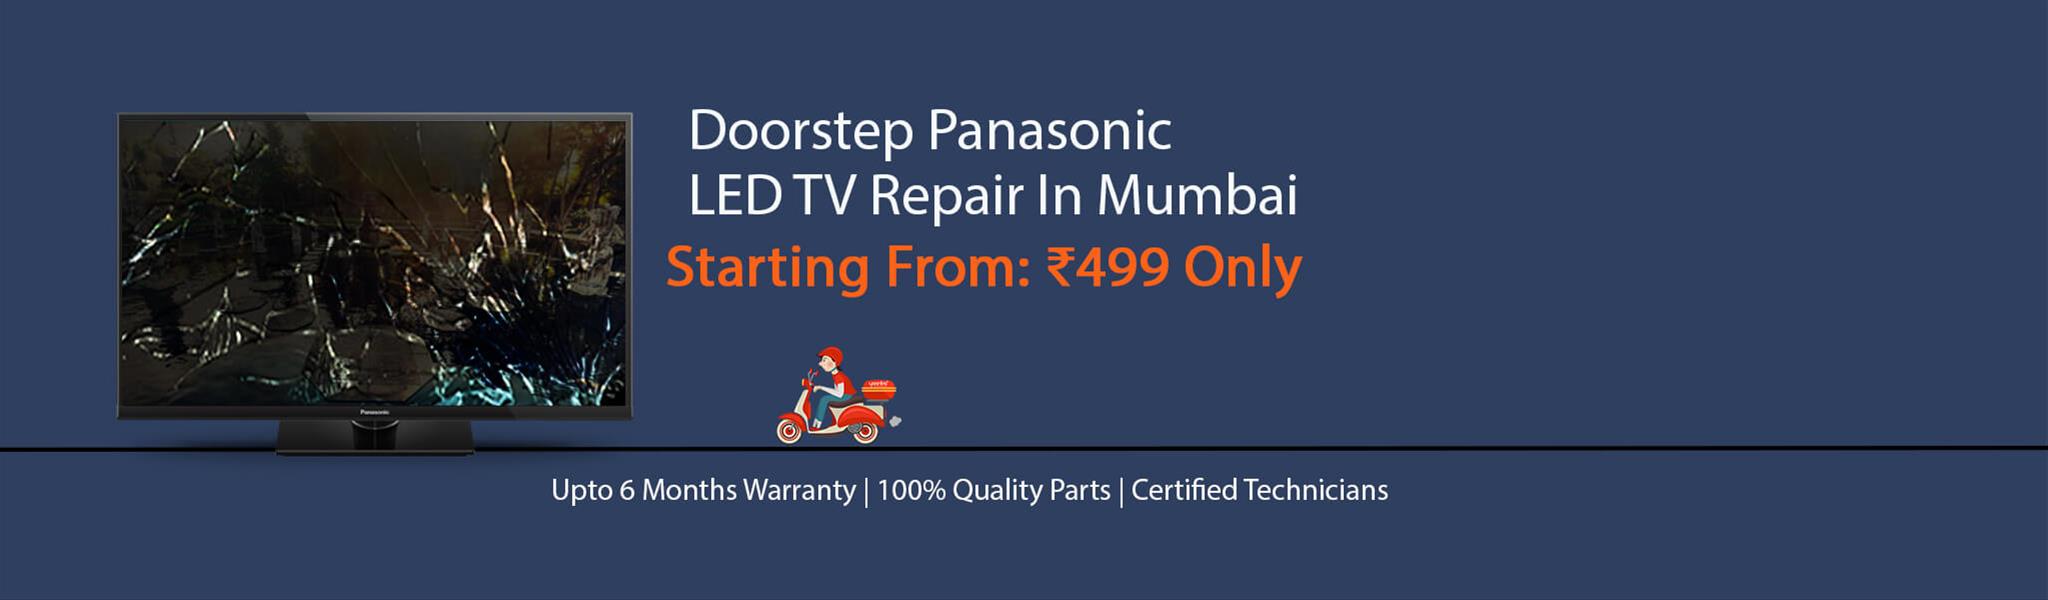 panasonic-tv-repair-in-mumbai.jpg